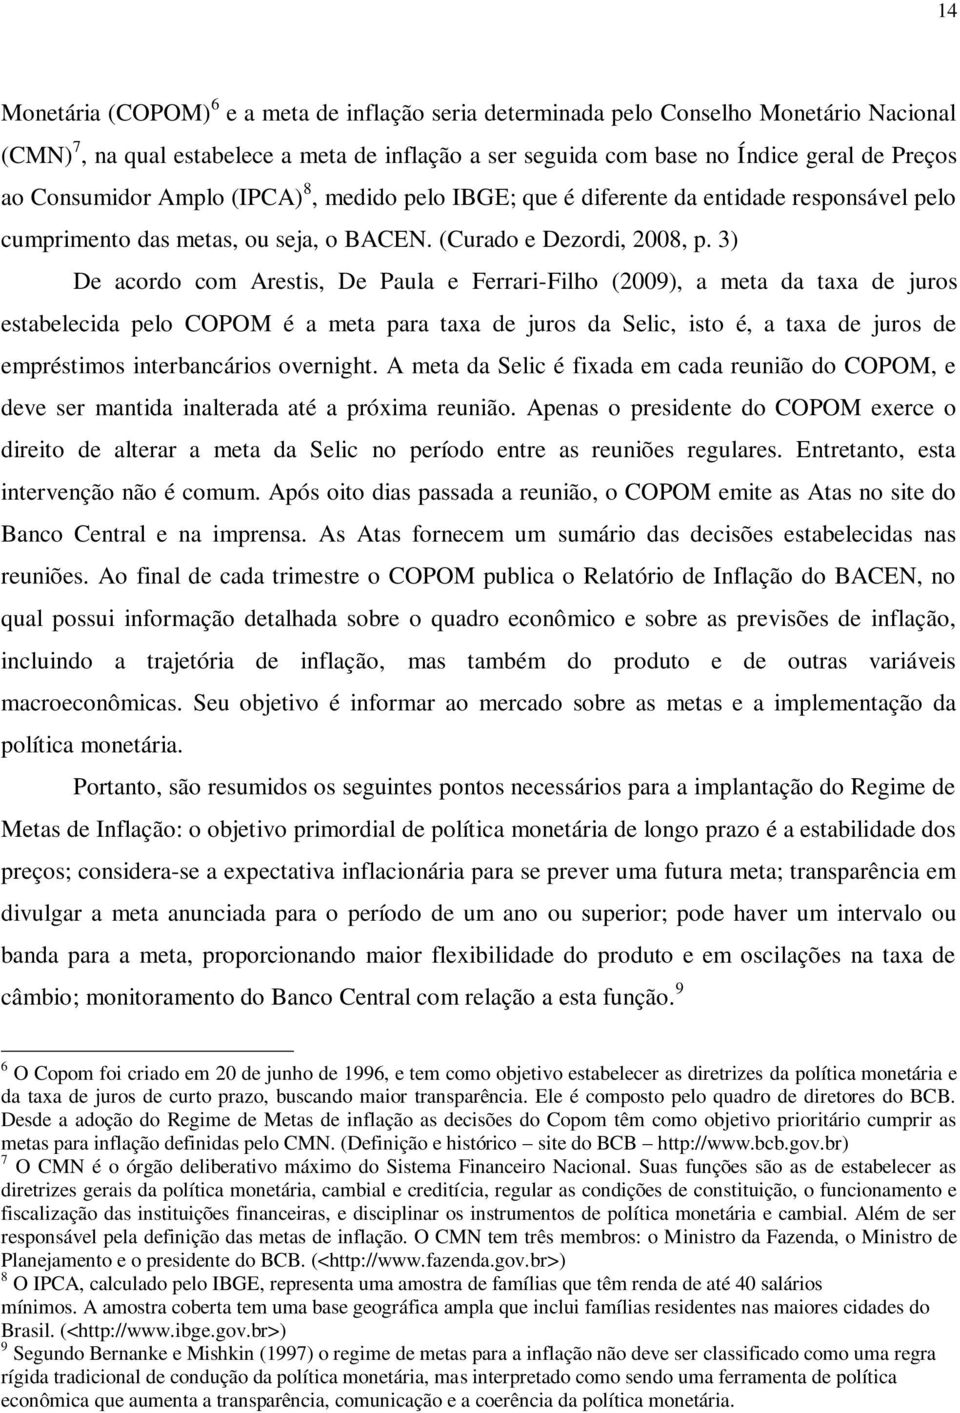 3) De acordo com Arestis, De Paula e Ferrari-Filho (2009), a meta da taxa de juros estabelecida pelo COPOM é a meta para taxa de juros da Selic, isto é, a taxa de juros de empréstimos interbancários